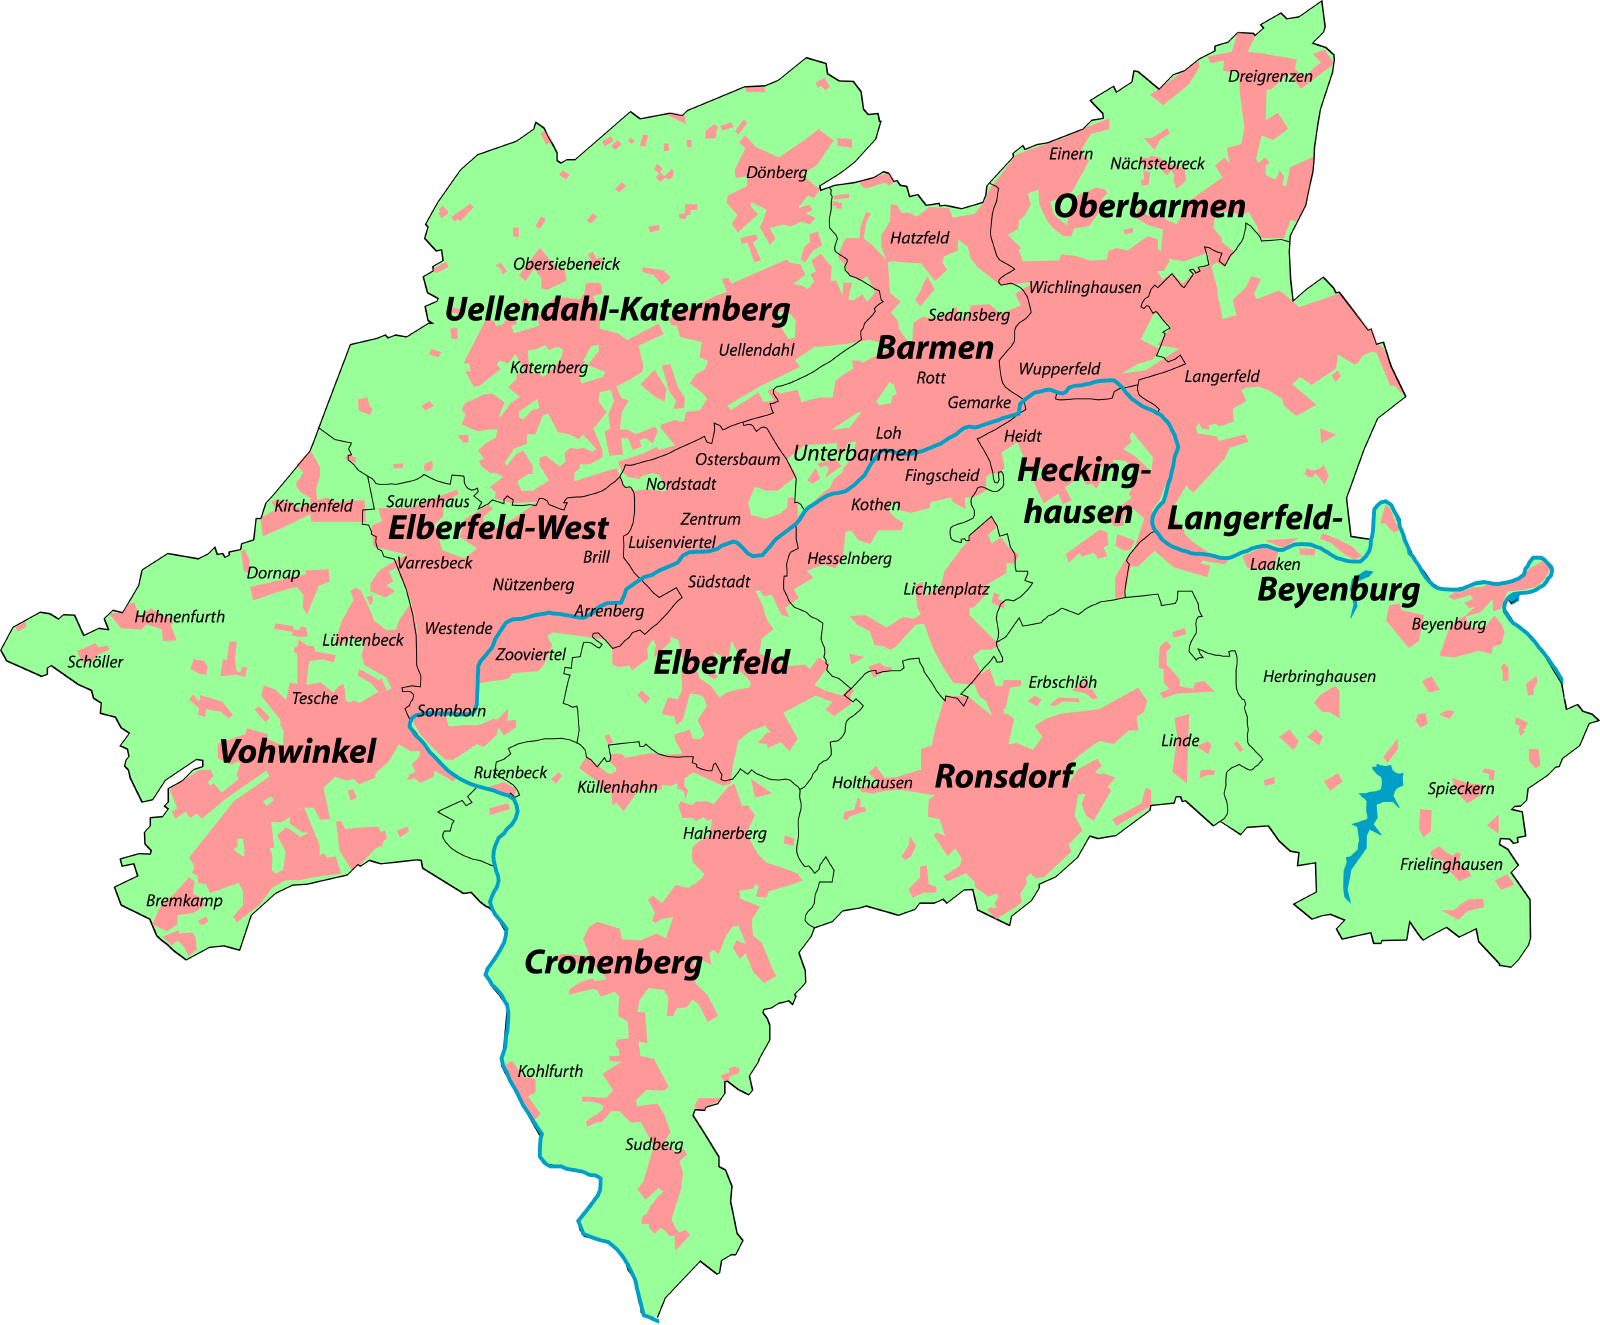 Wuppertal regional plan